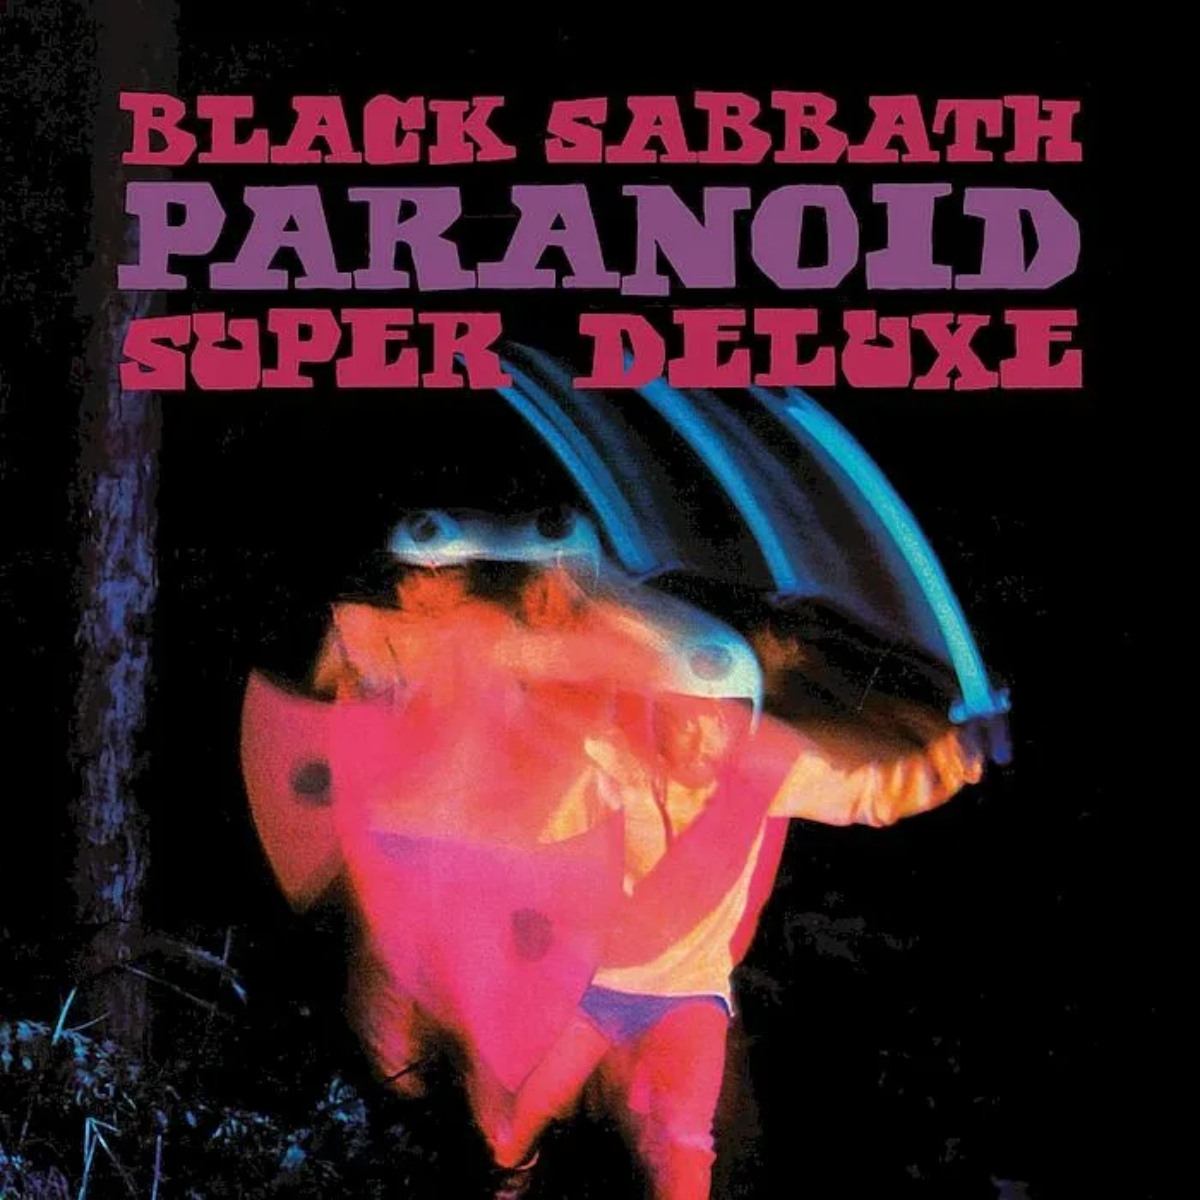 Couverture de l'album "Paranoid" de Black Sabbath